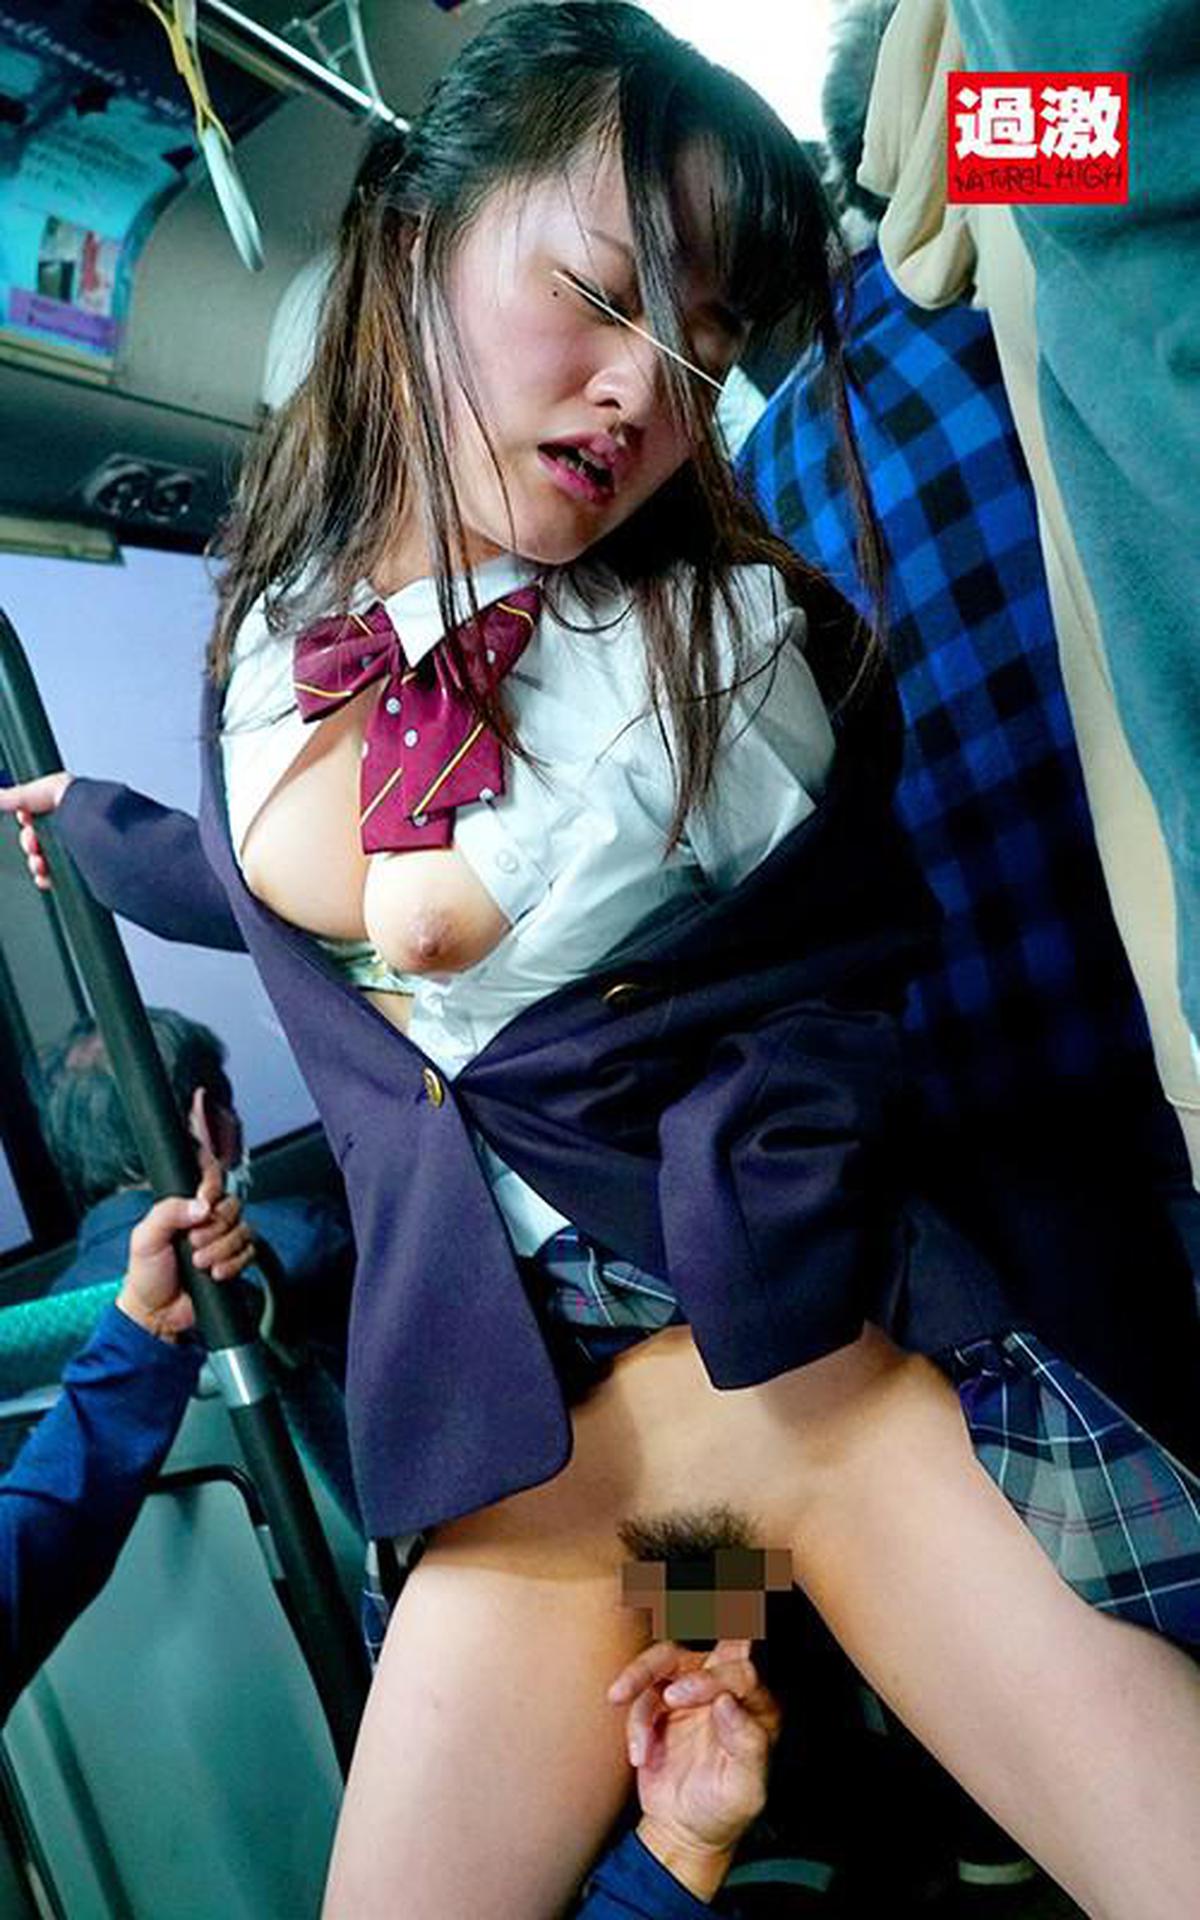 NHDTB-404 Garotas com seios grandes ○ Raw 10 que ficam encharcadas por trás de um uniforme em um ônibus lotado